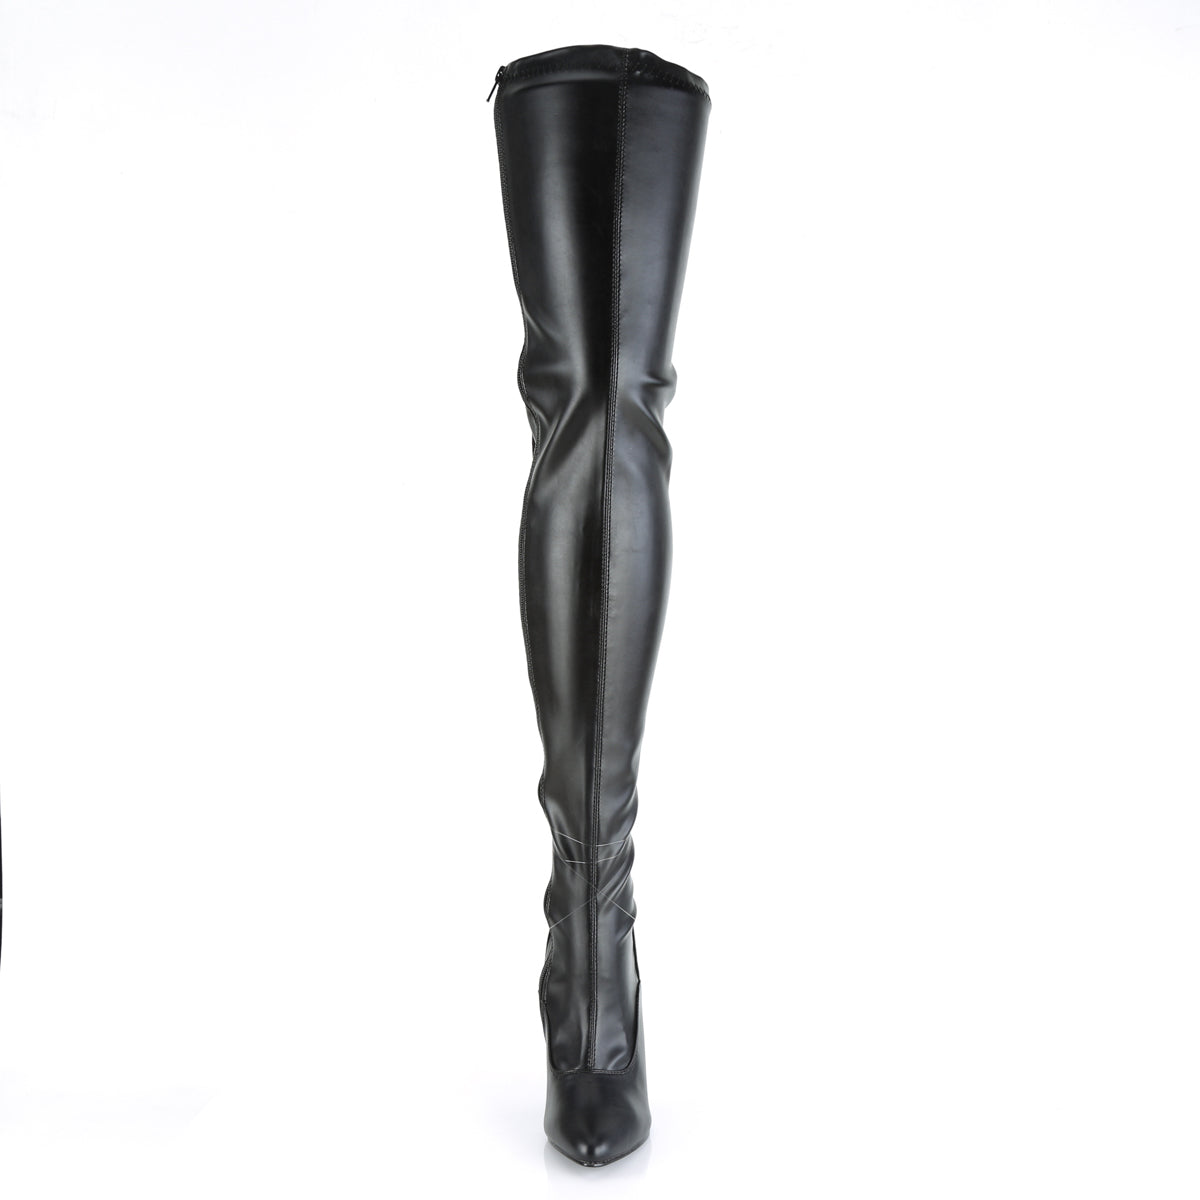 SEDUCE-3063 Black Thigh High Boots